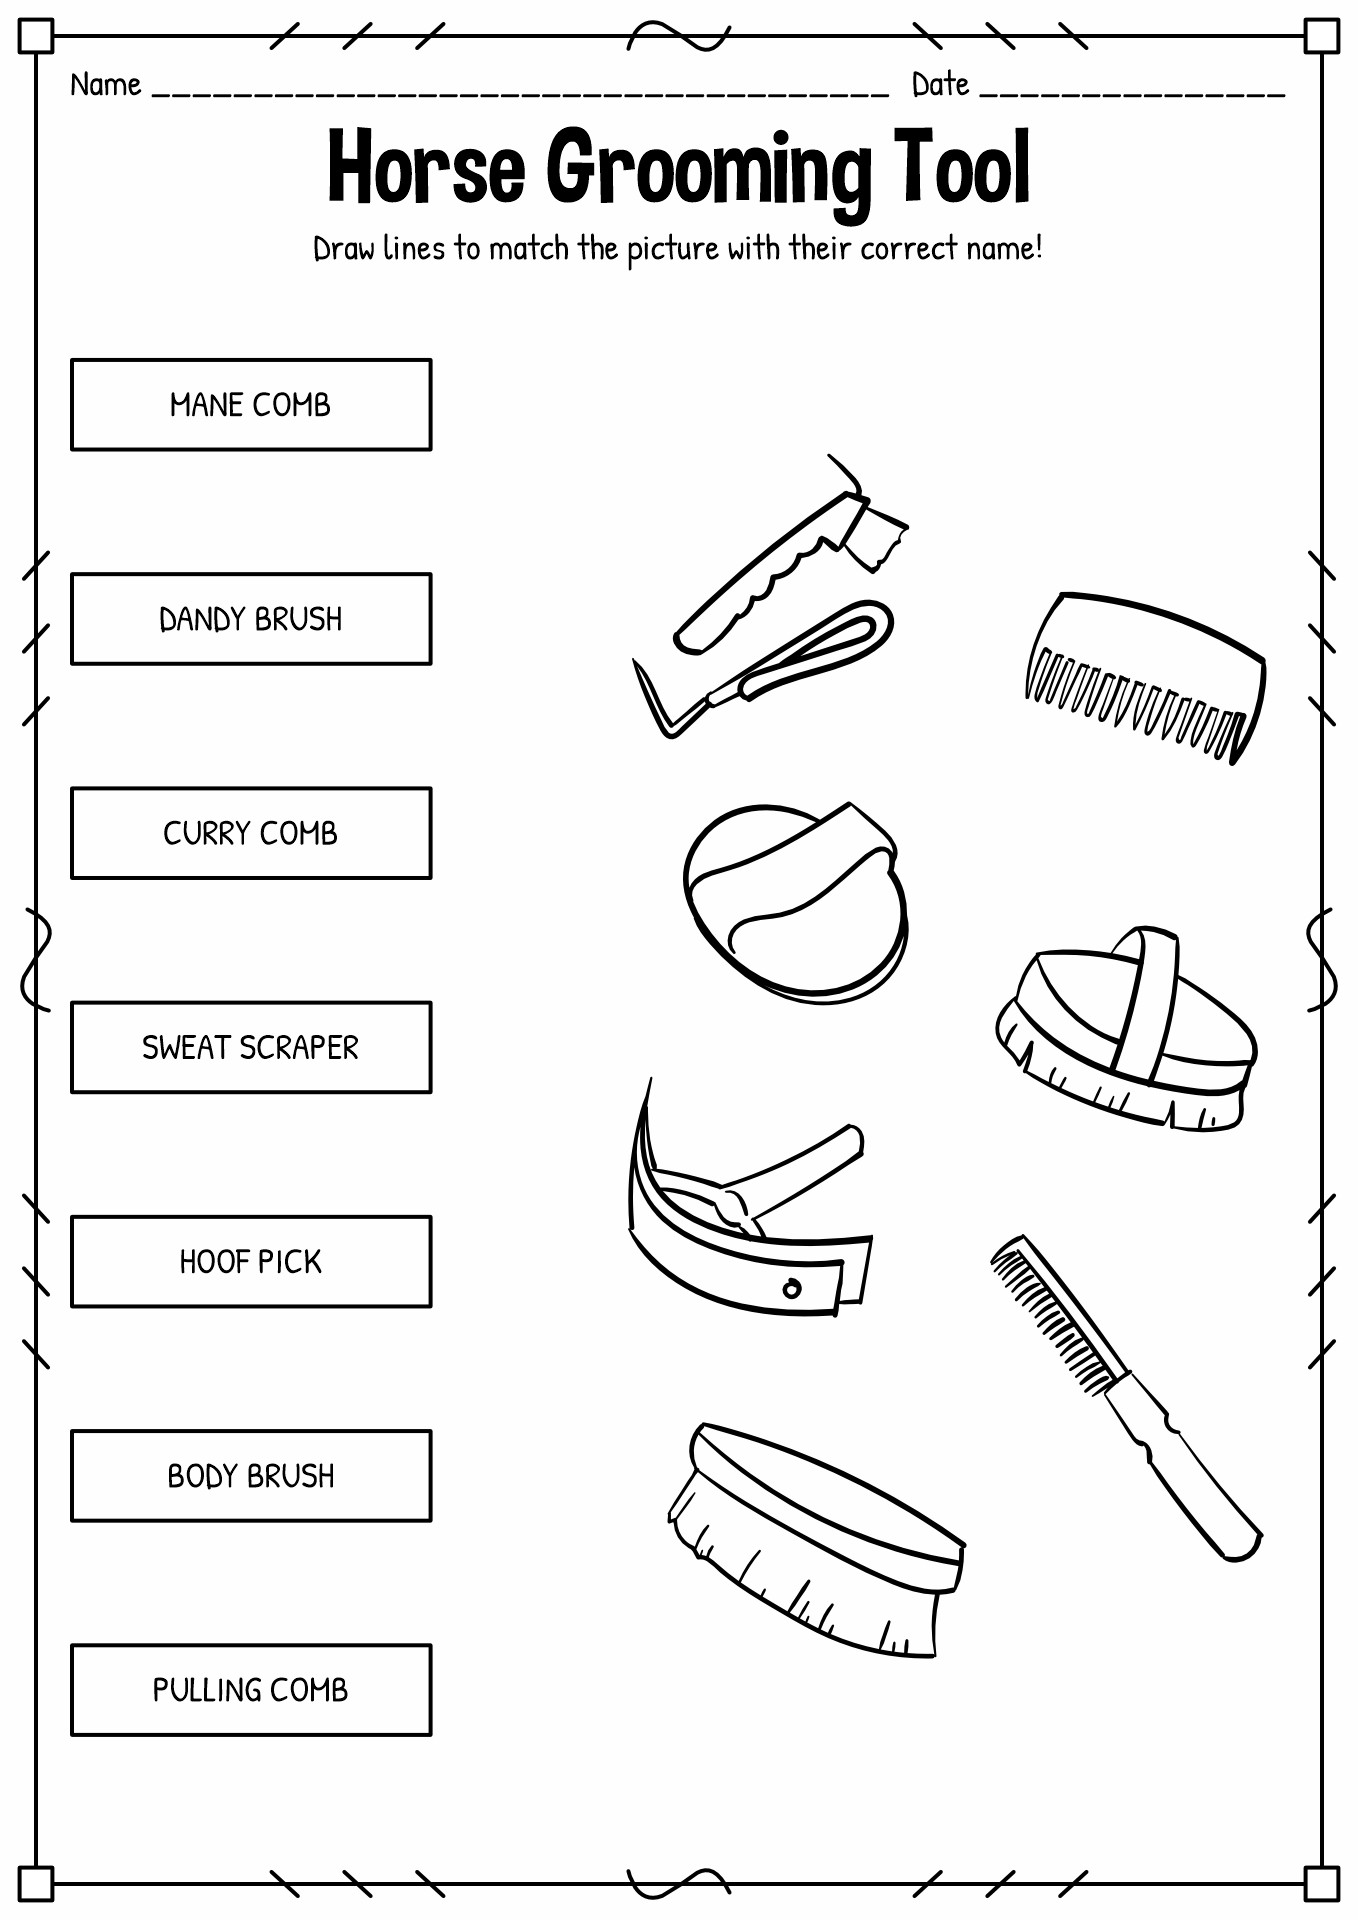 Horse Grooming Tools Worksheet Image